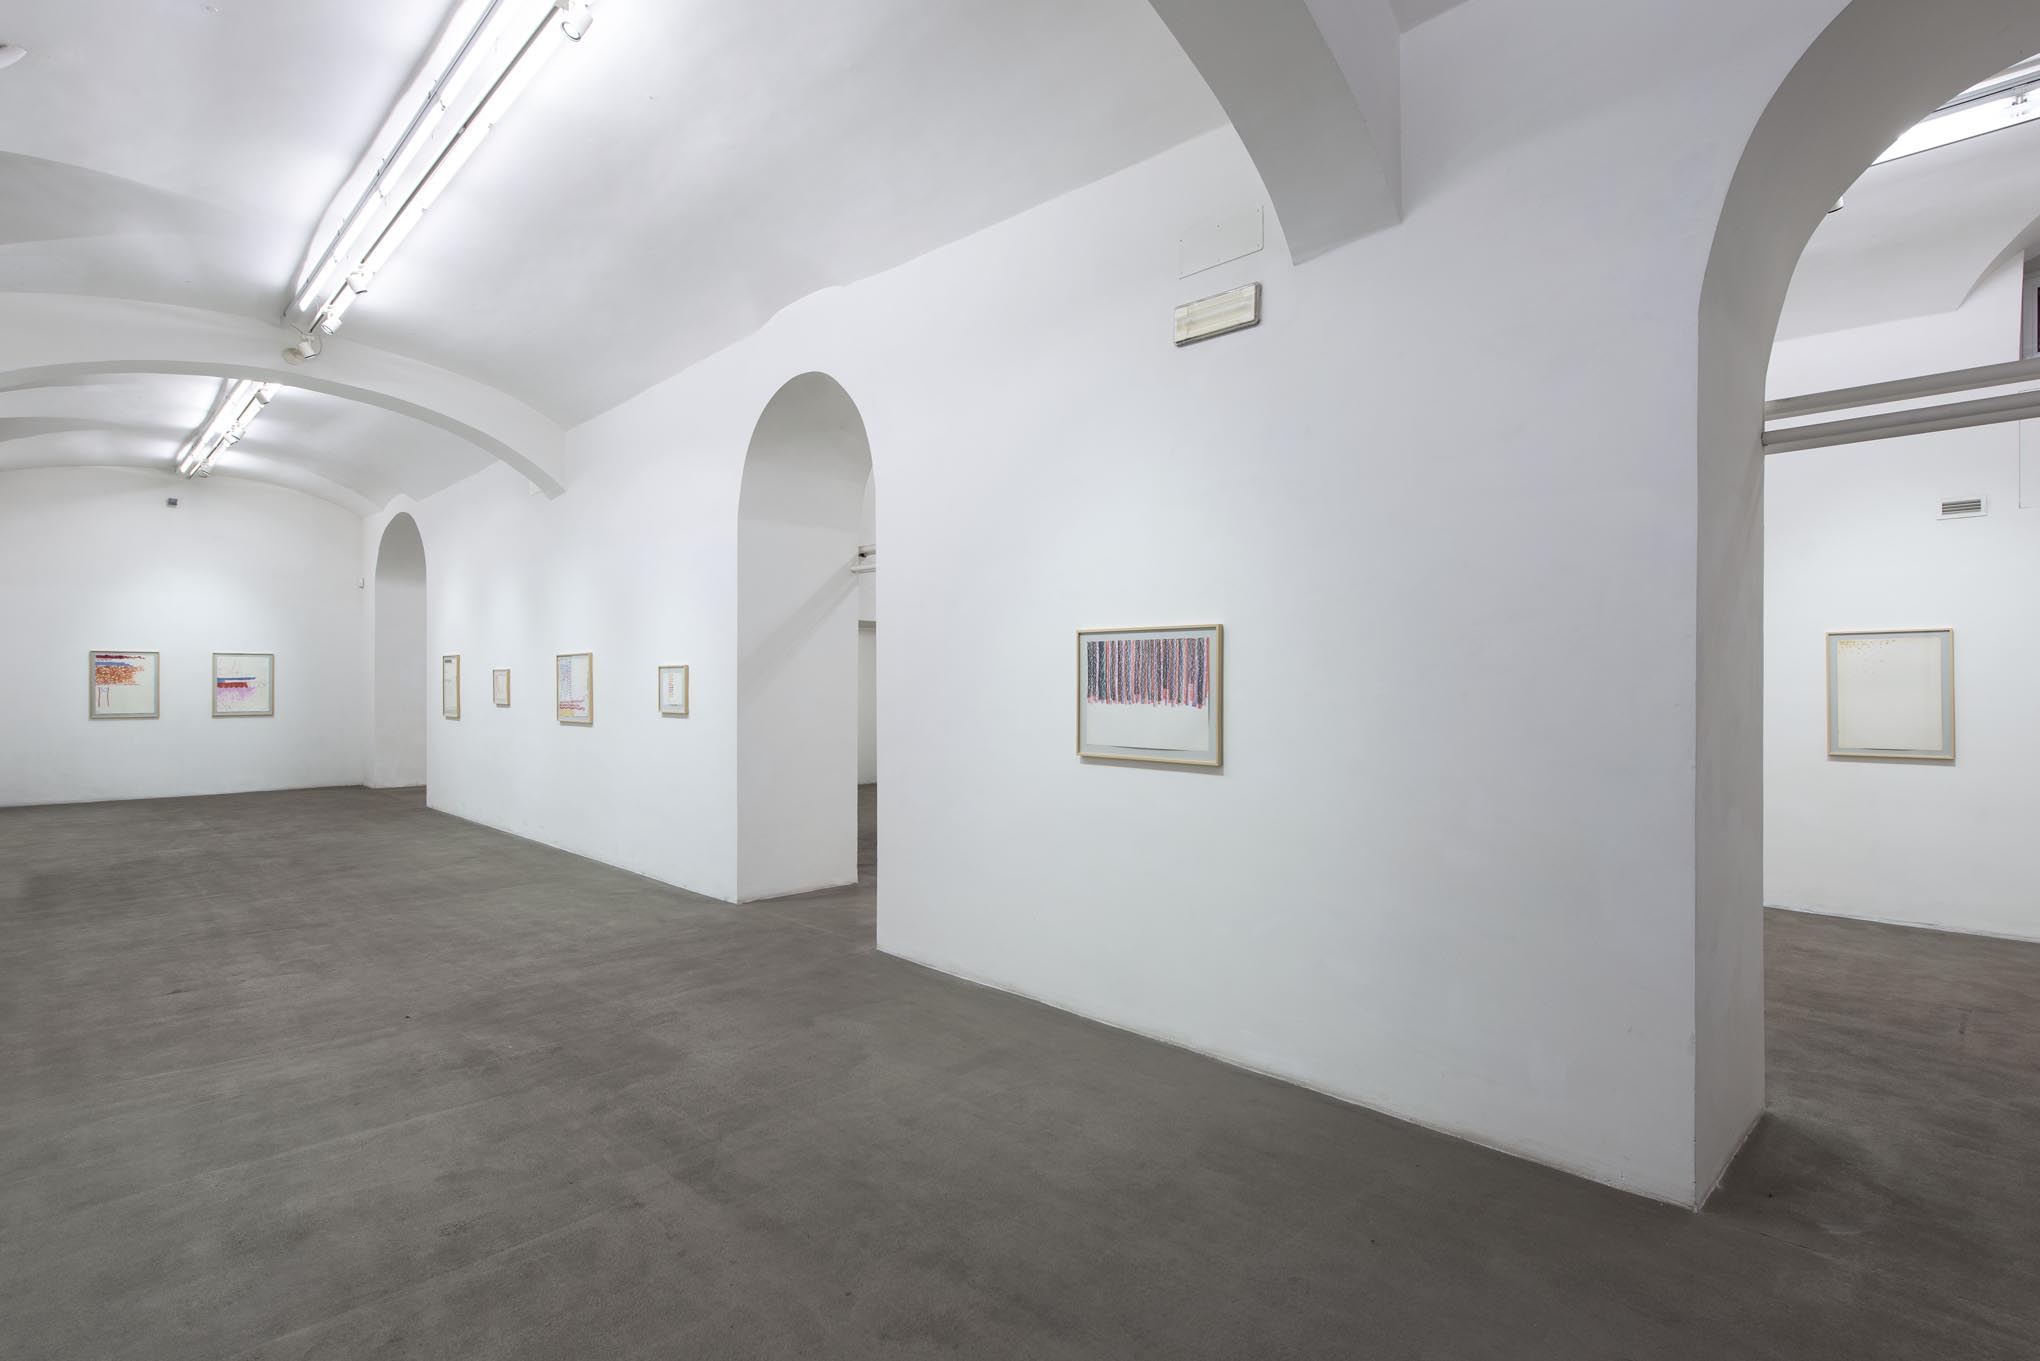 Giorgio Griffa: Works on Paper. Installation view presso Fondazione Giuliani, foto di Giorgio Benni